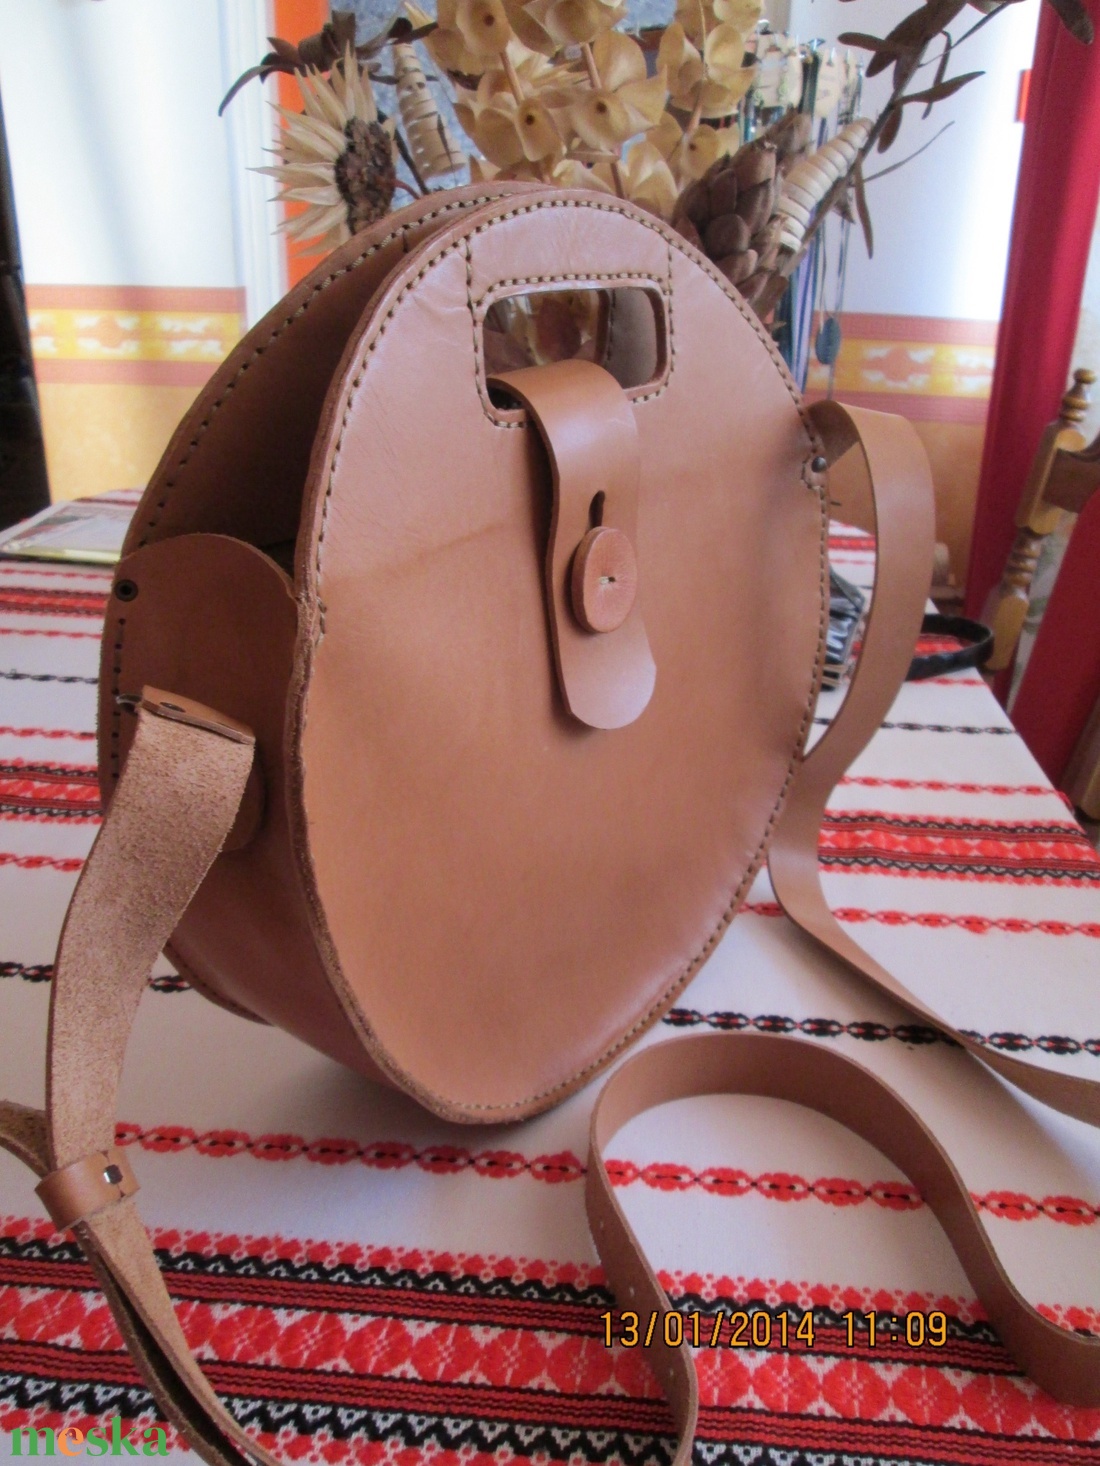 Óriási kör alakú táska - táska & tok - kézitáska & válltáska - vállon átvethető táska - Meska.hu